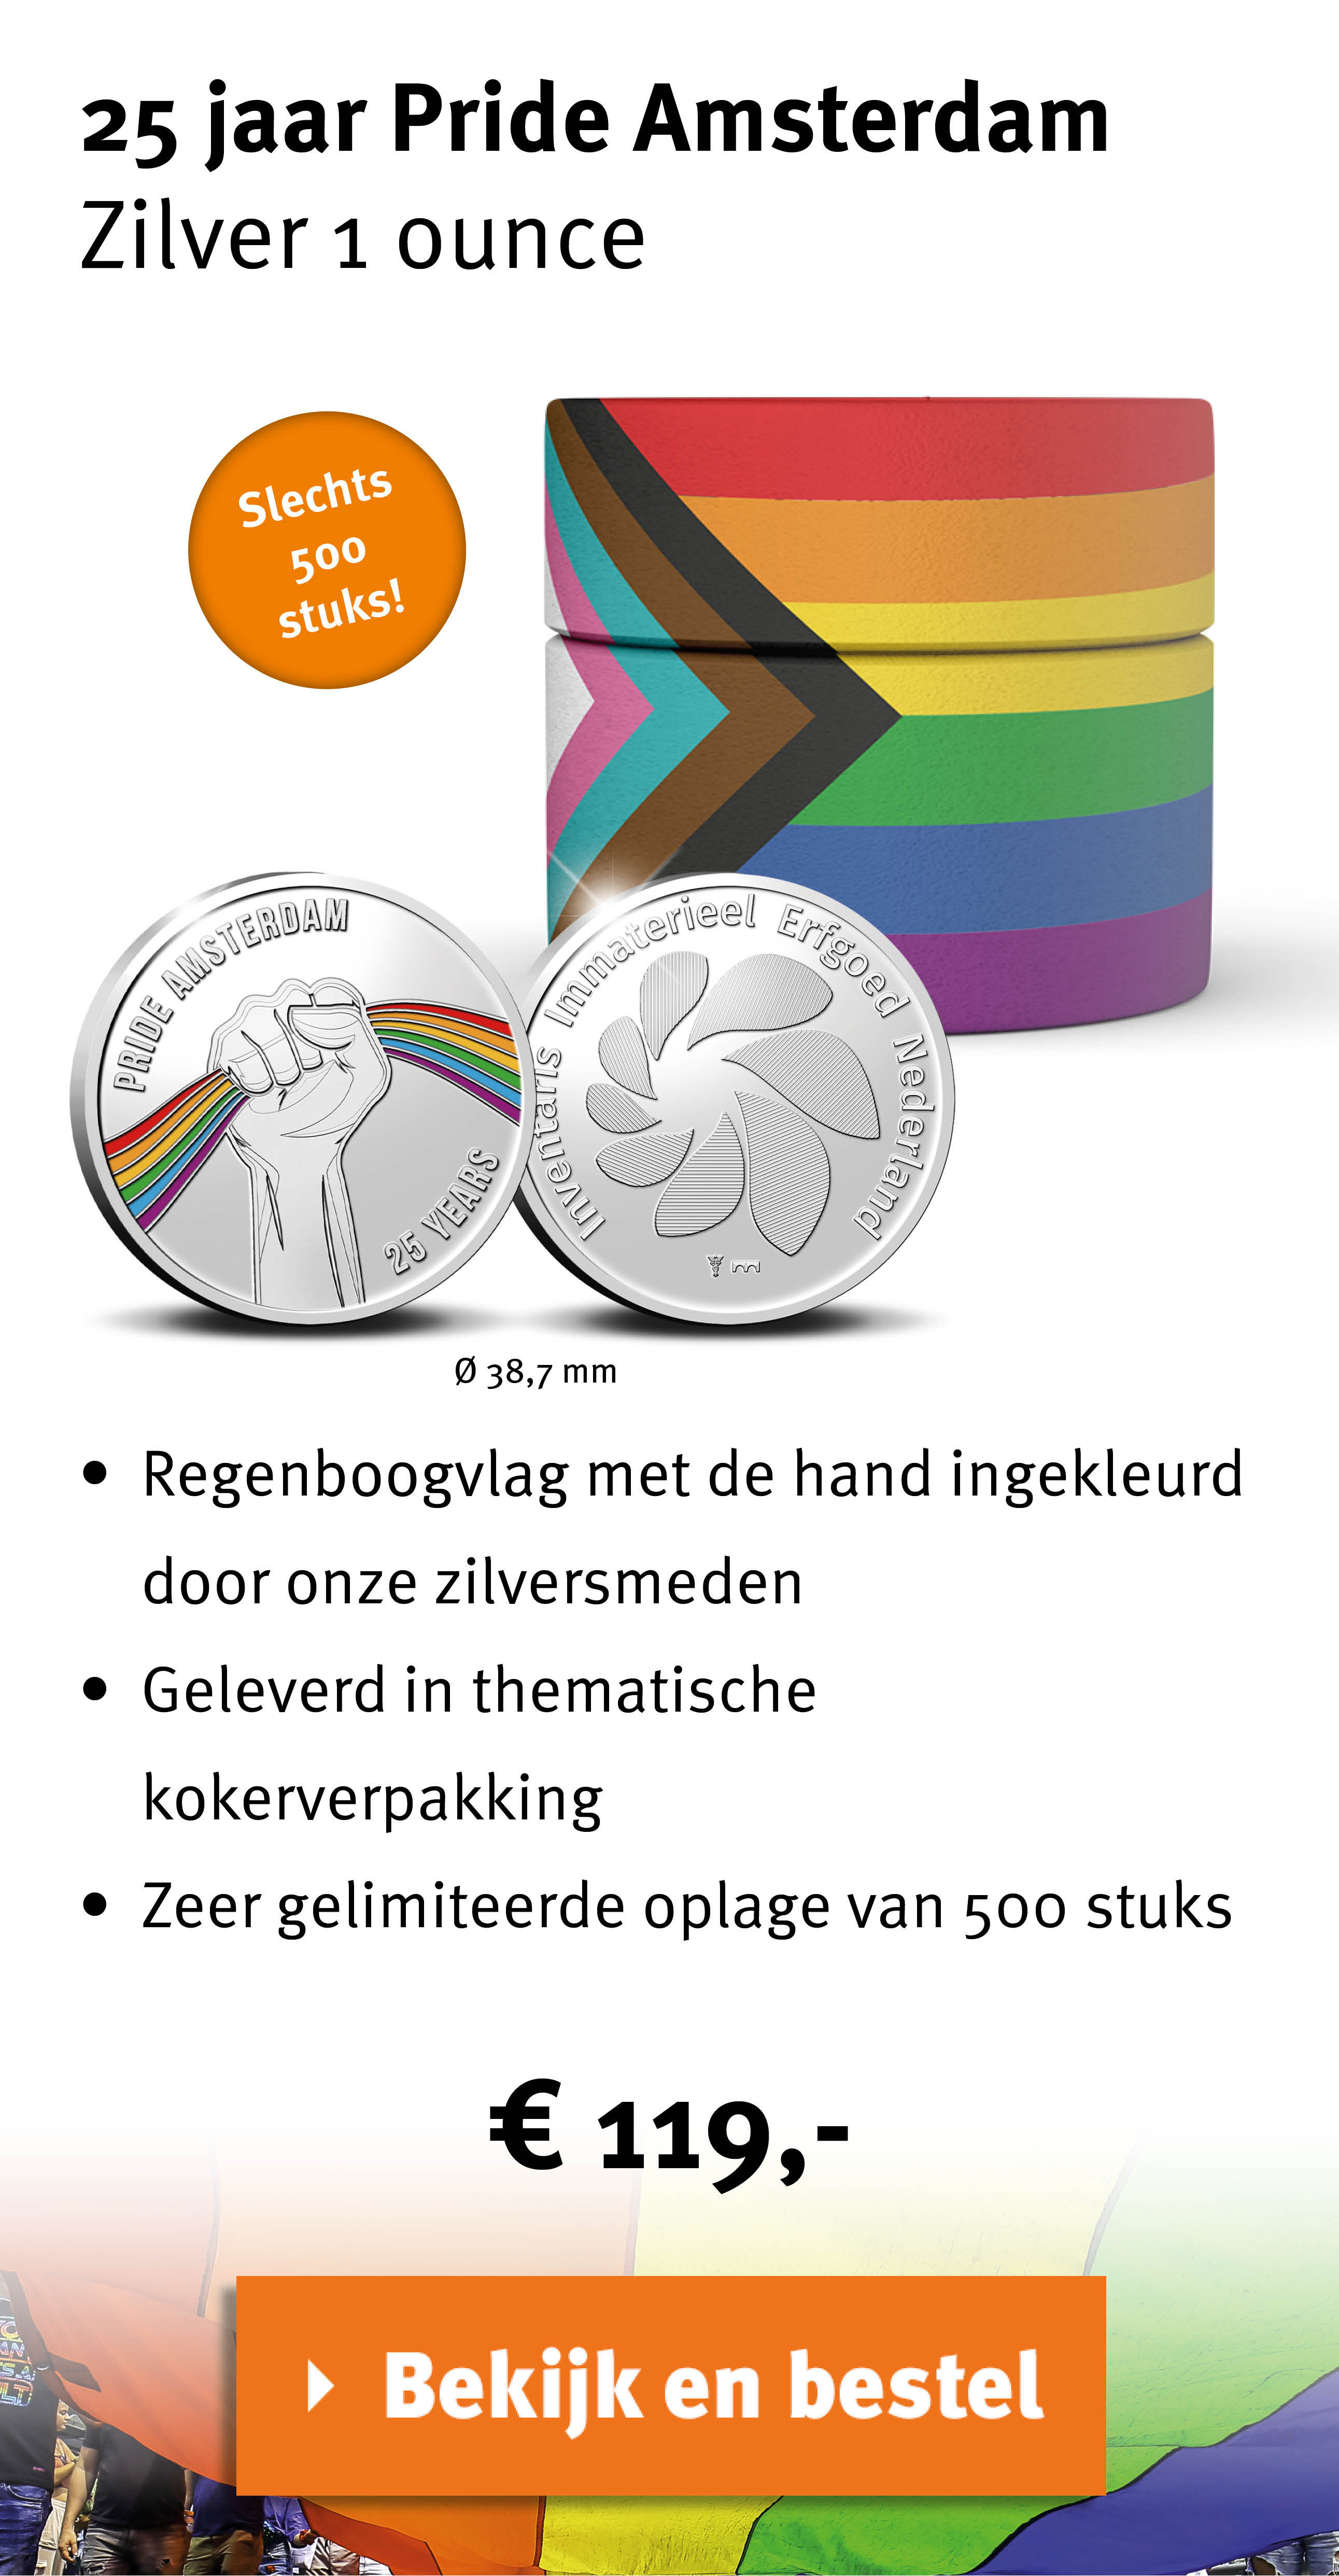 Bekijk en bestel: 25 jaar Pride Amsterdam Zilver 1 ounce